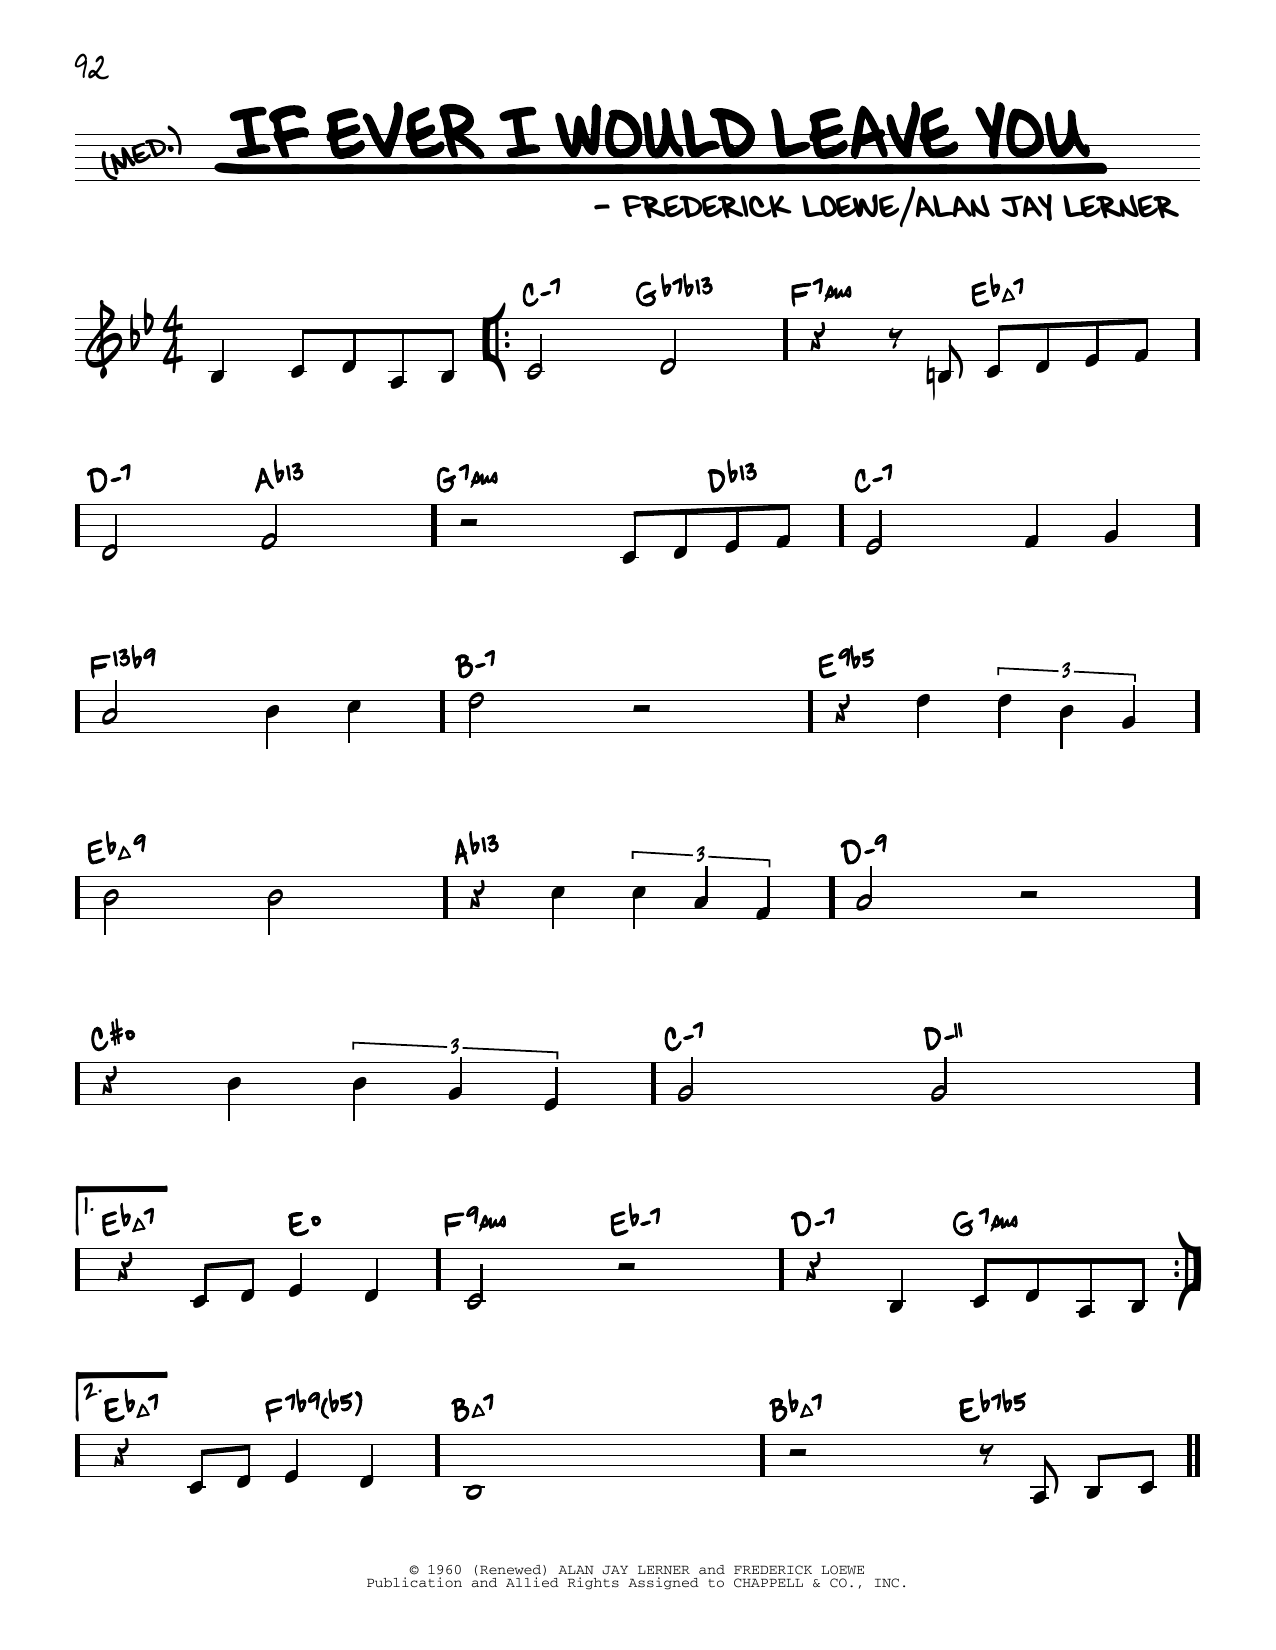 Lerner & Loewe If Ever I Would Leave You (arr. David Hazeltine) Sheet Music Notes & Chords for Real Book – Enhanced Chords - Download or Print PDF